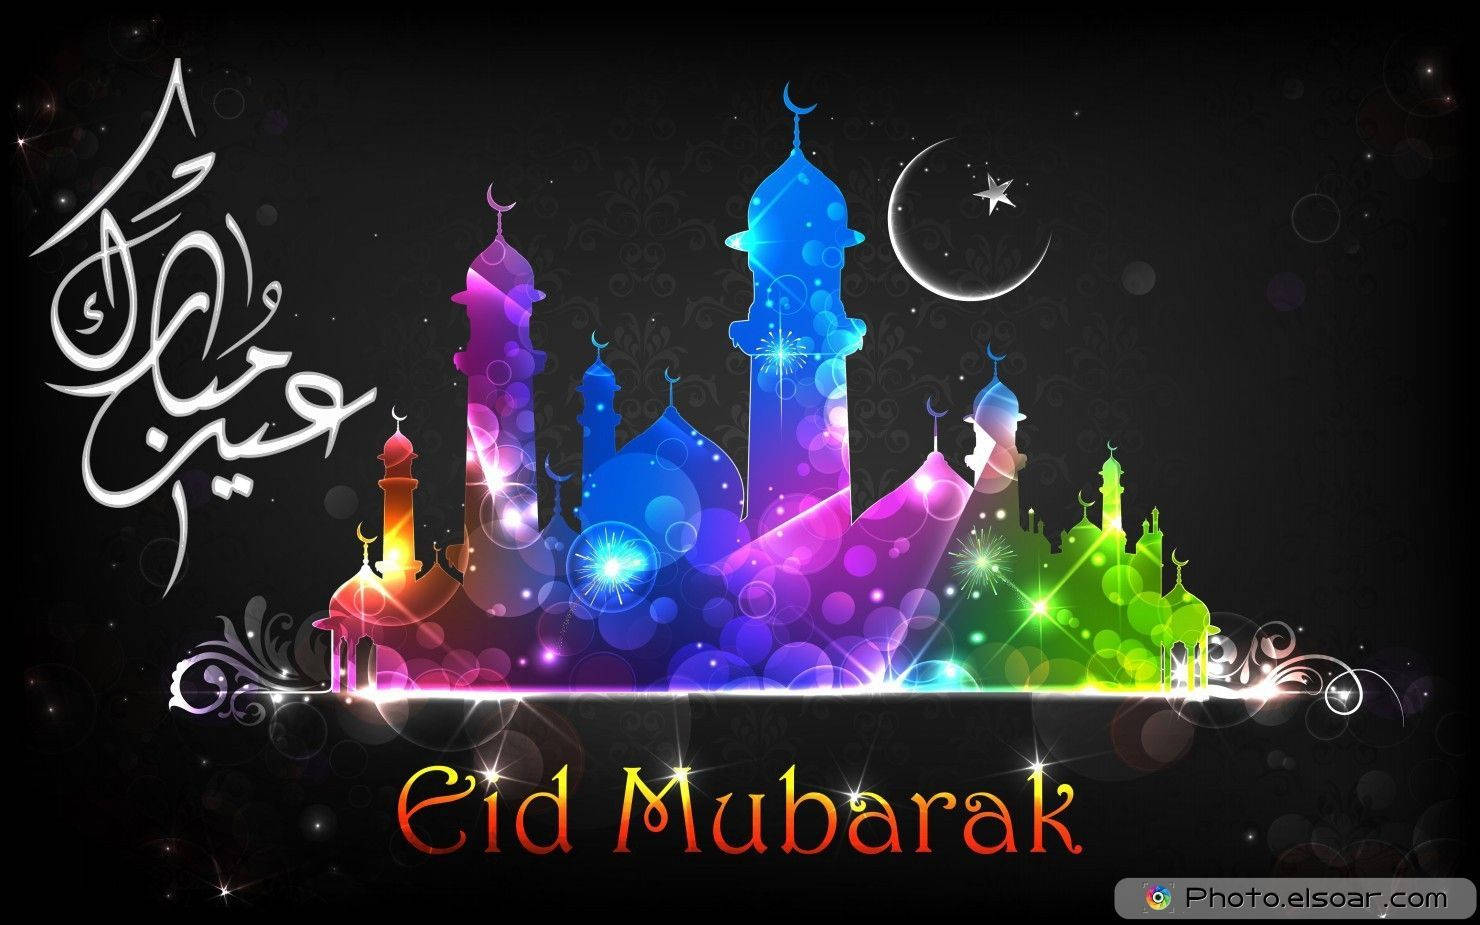 Caption: Joyful Celebrations Of Eid Mubarak Background